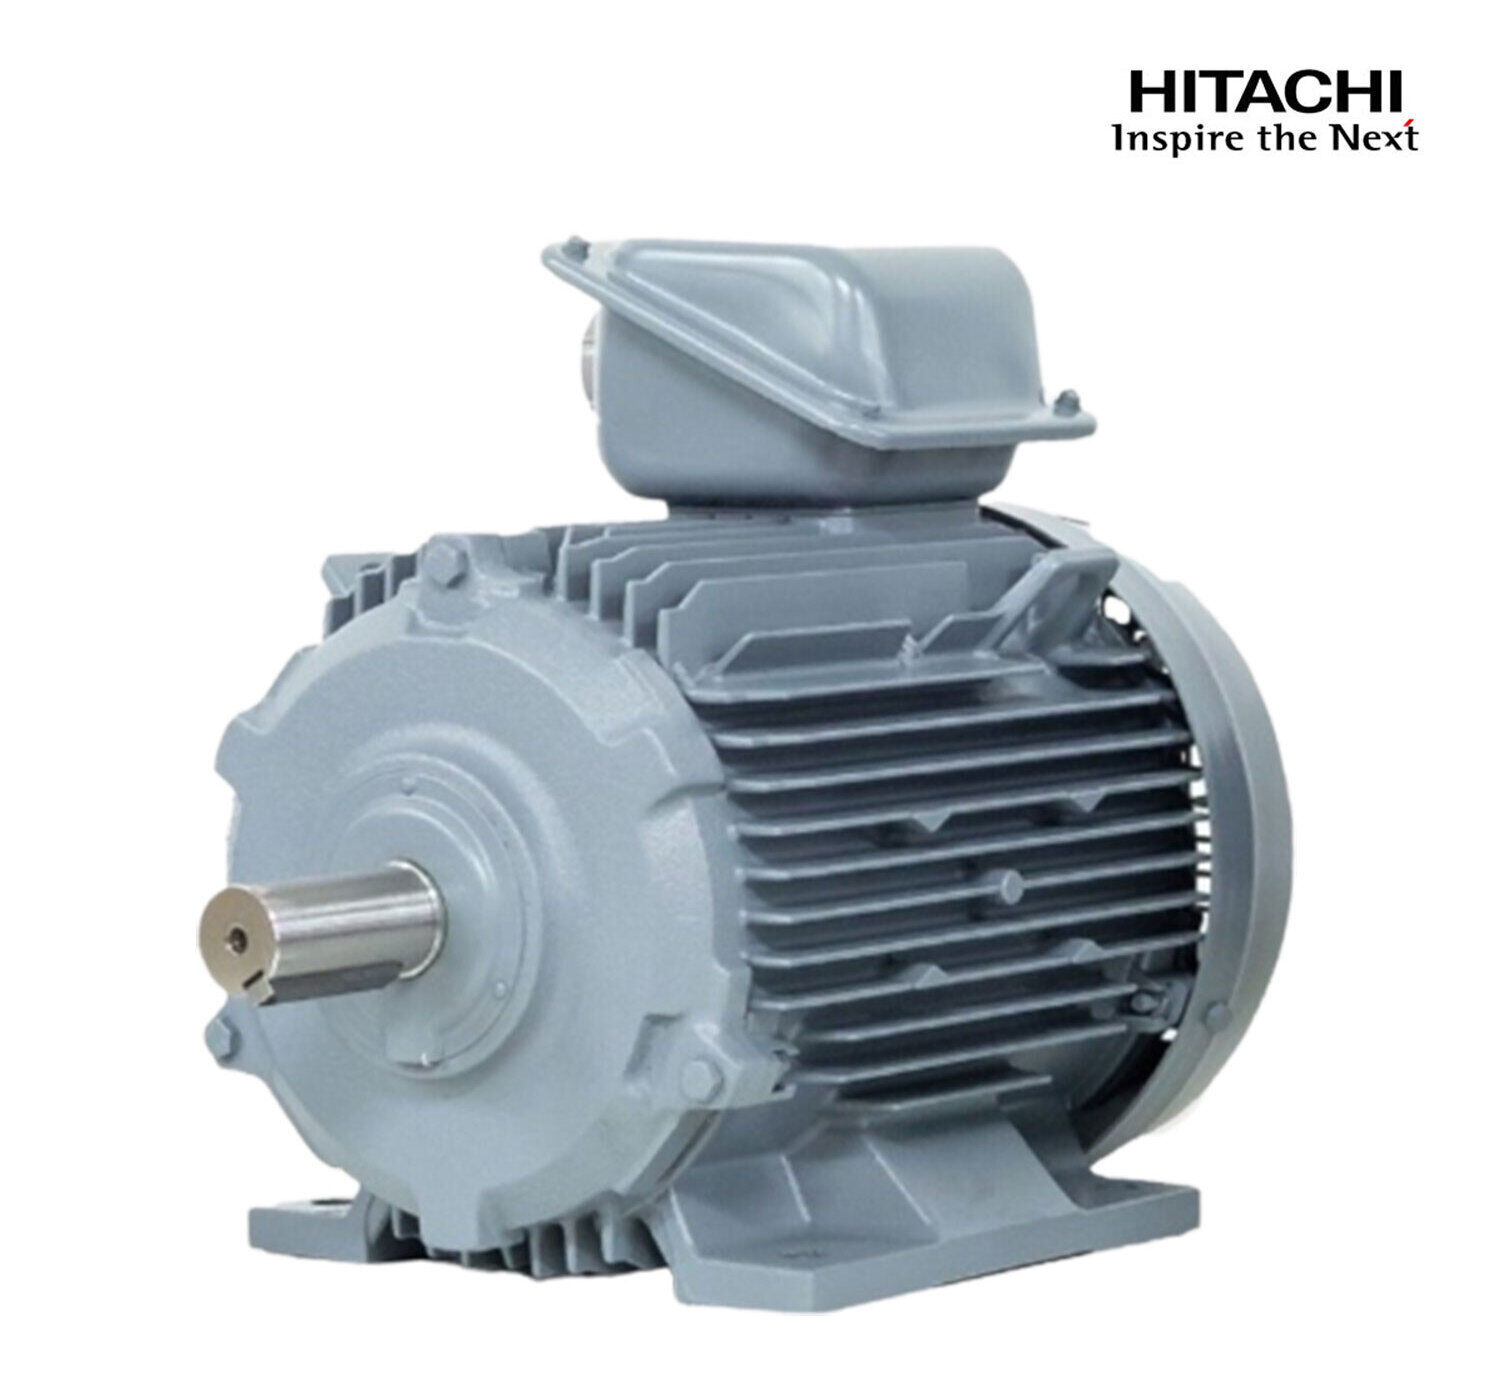 มอเตอร์ฮิตาชิของแท้ 100% HITACHI รุ่น TFO-KK กำลัง 40 แรงม้า (30 KW.) กำลังไฟฟ้าที่ใช้ 380V ความเร็วรอบตัวเปล่า 1450 RPM แกนเพลามอเตอร์ 55 MM.รับประกัน 3 ปี มีของพร้อมจัดส่งทุกวัน